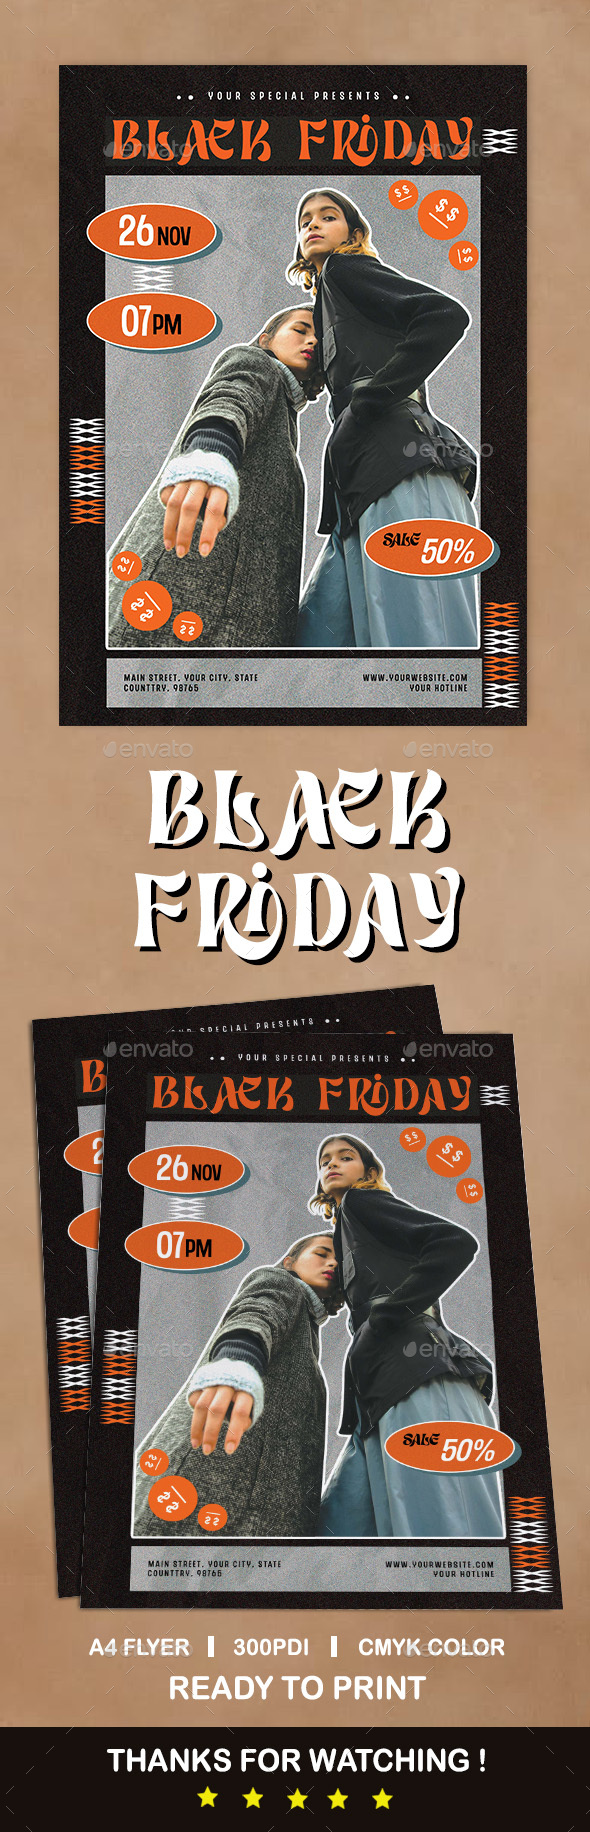 [DOWNLOAD]Black Friday Flyer